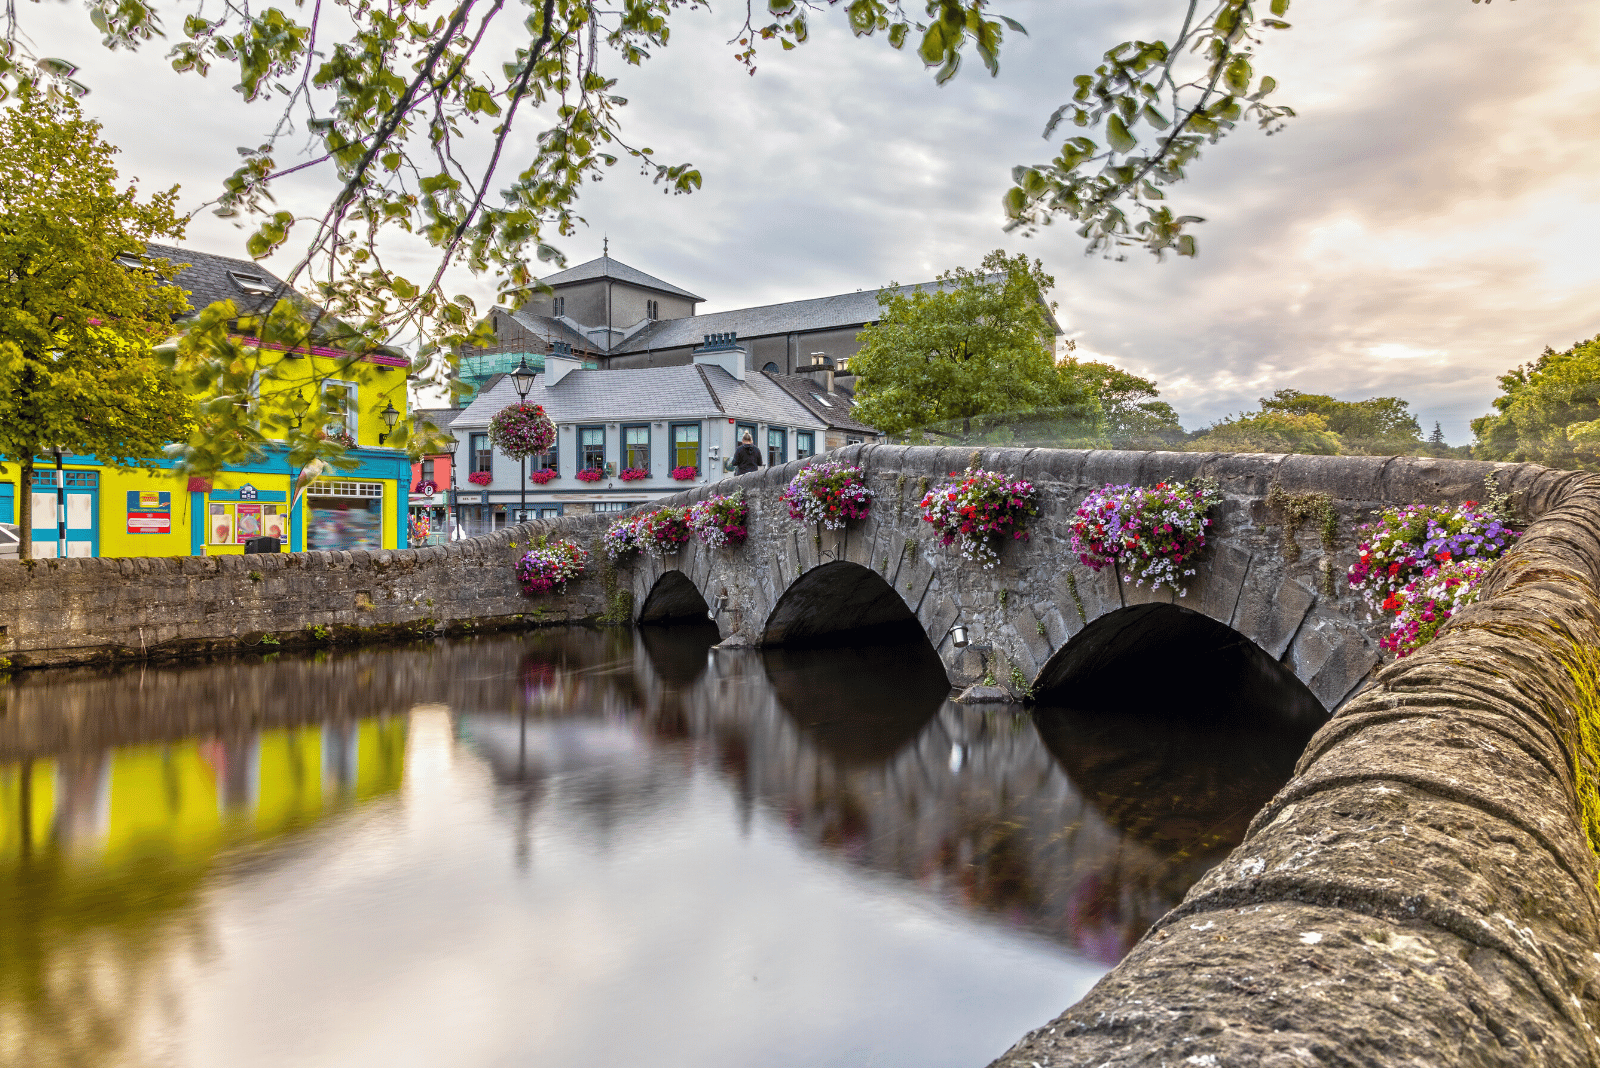 Westport Bridge over Carrowbeg River, Westport, Ireland